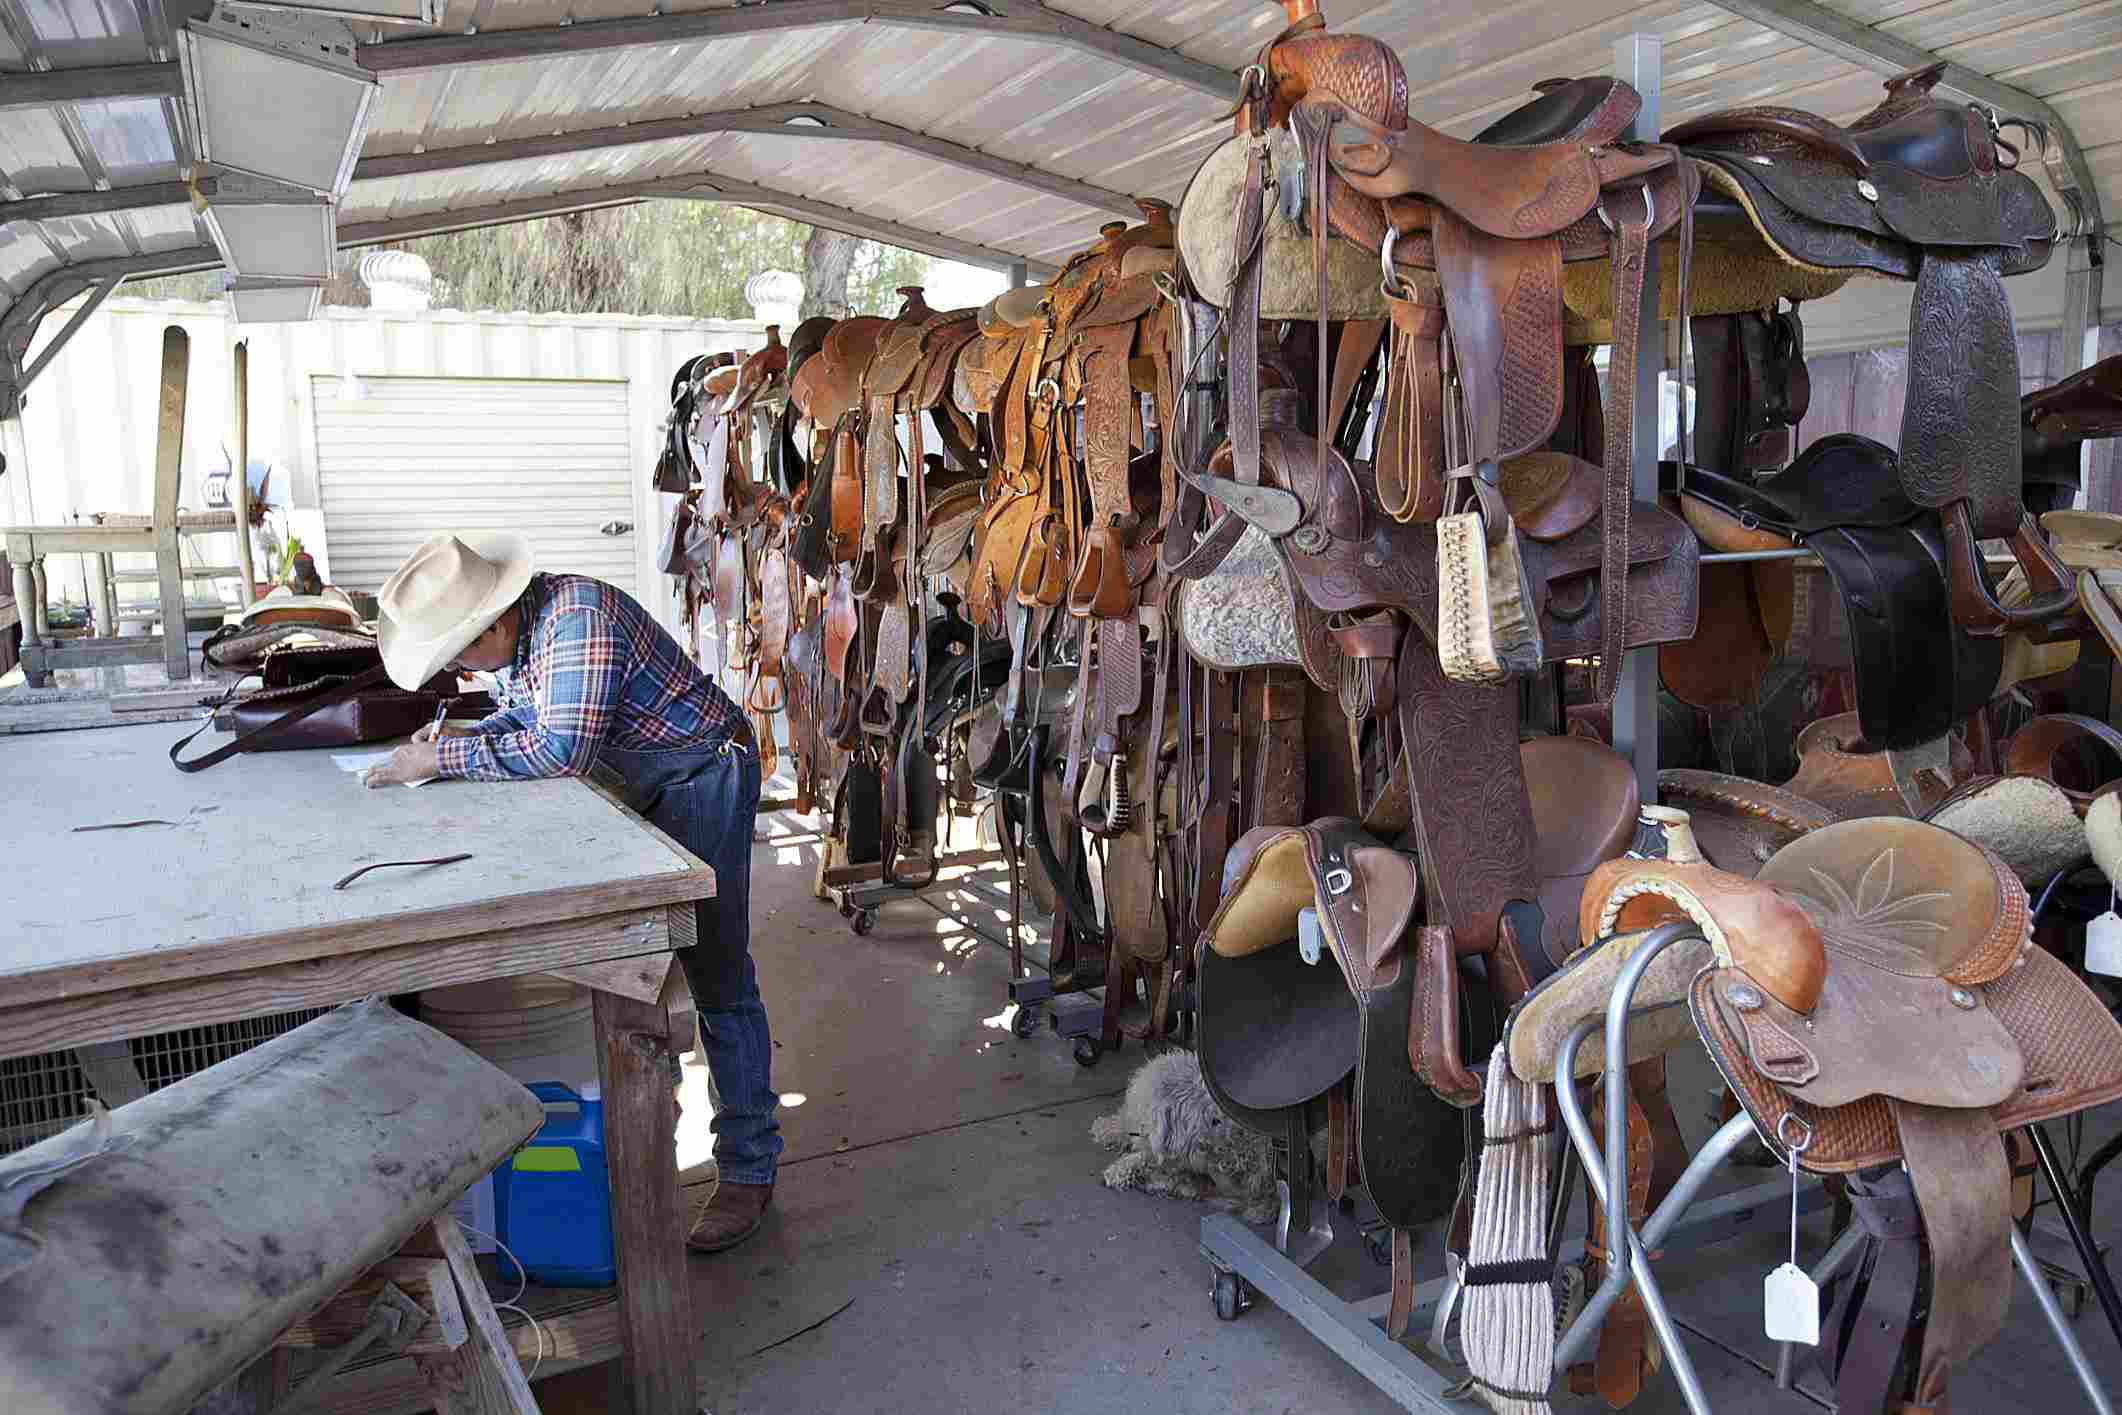 Saddler working in his saddle shop